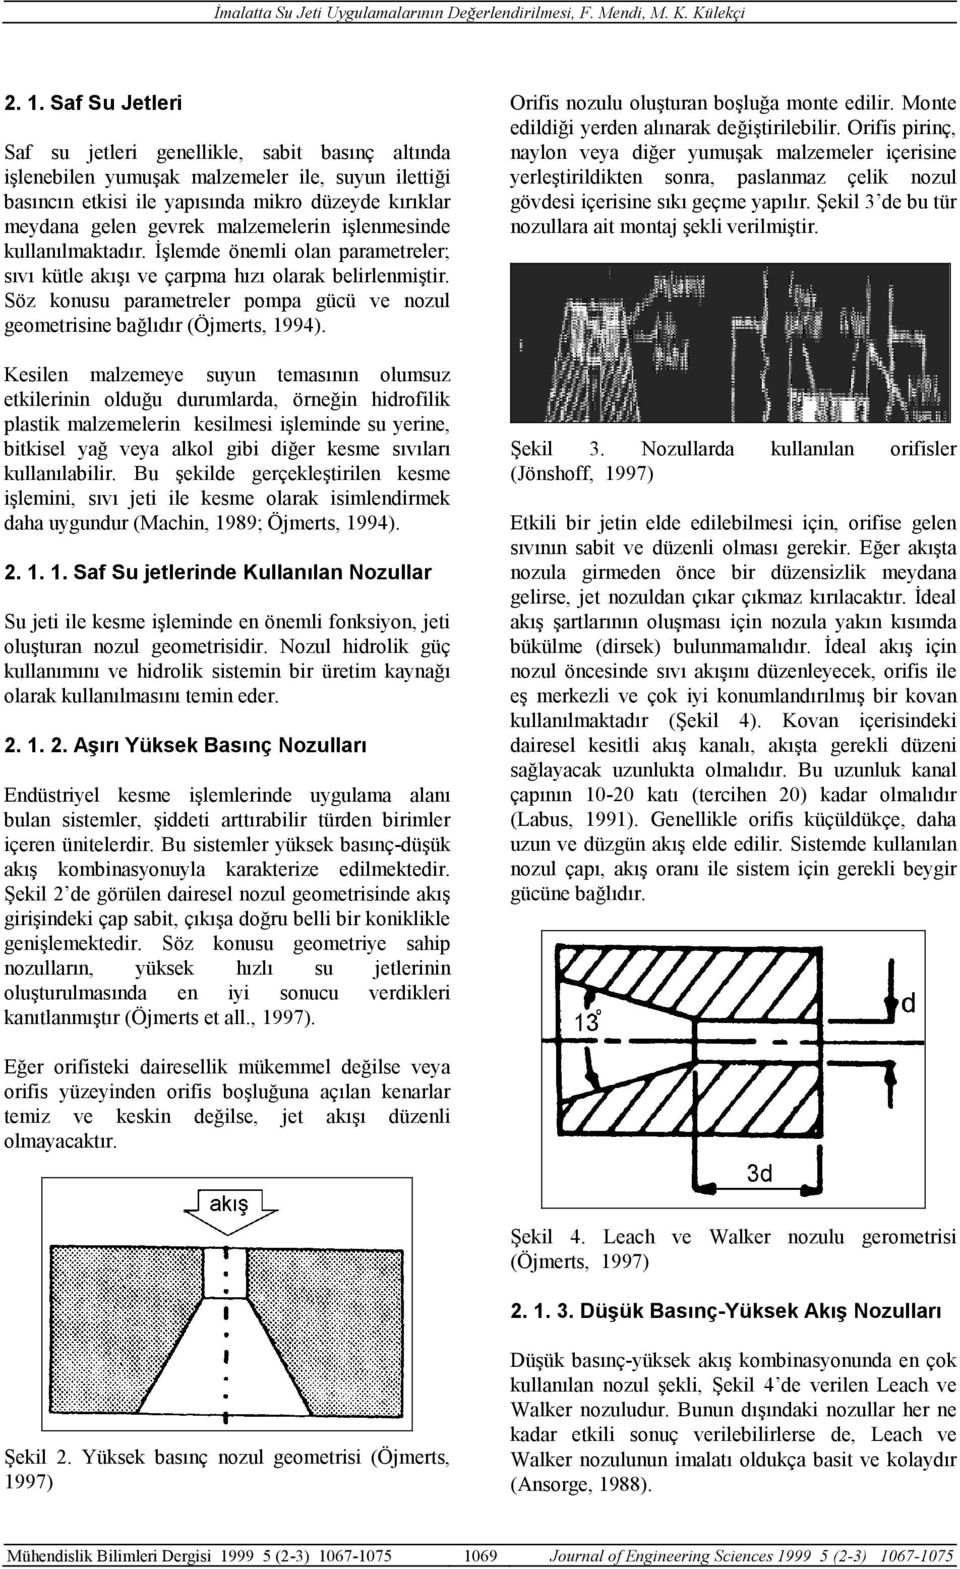 Söz konusu parametreler pompa gücü ve nozul geometrisine bağlıdır (Öjmerts, 1994).